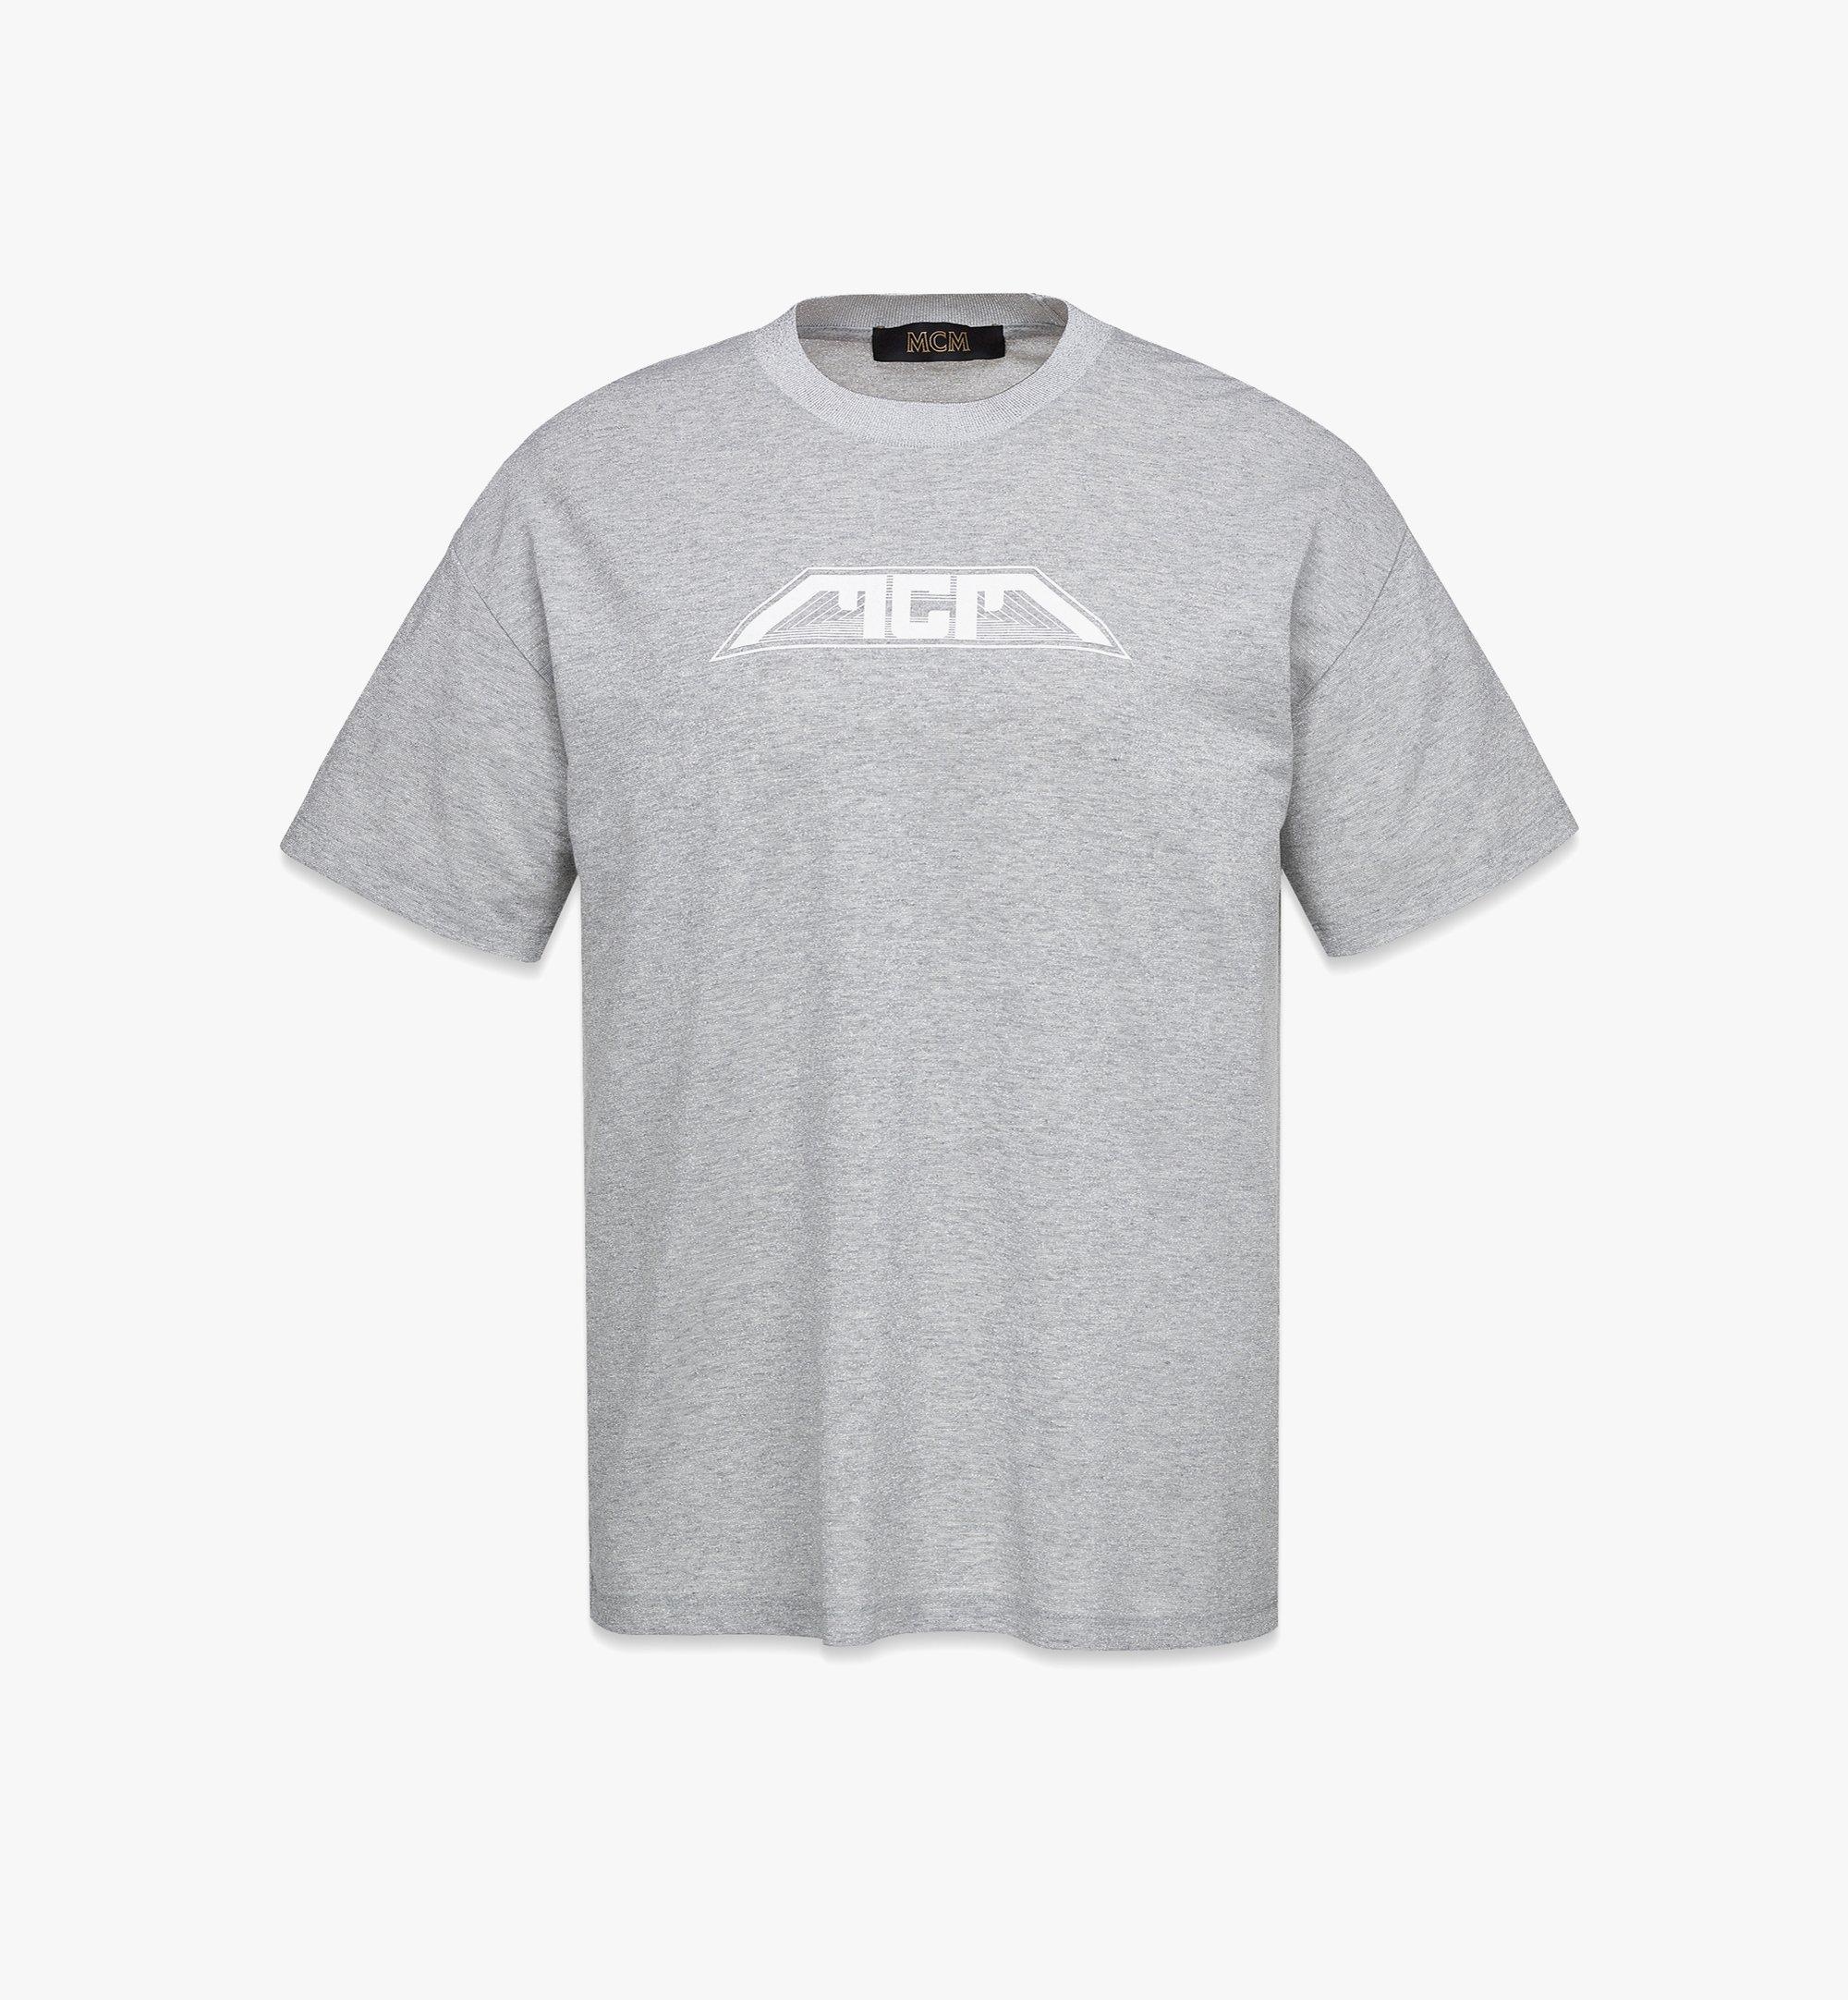 Women’s Meta Cyberpunk Logo T-Shirt in Organic Cotton - 1